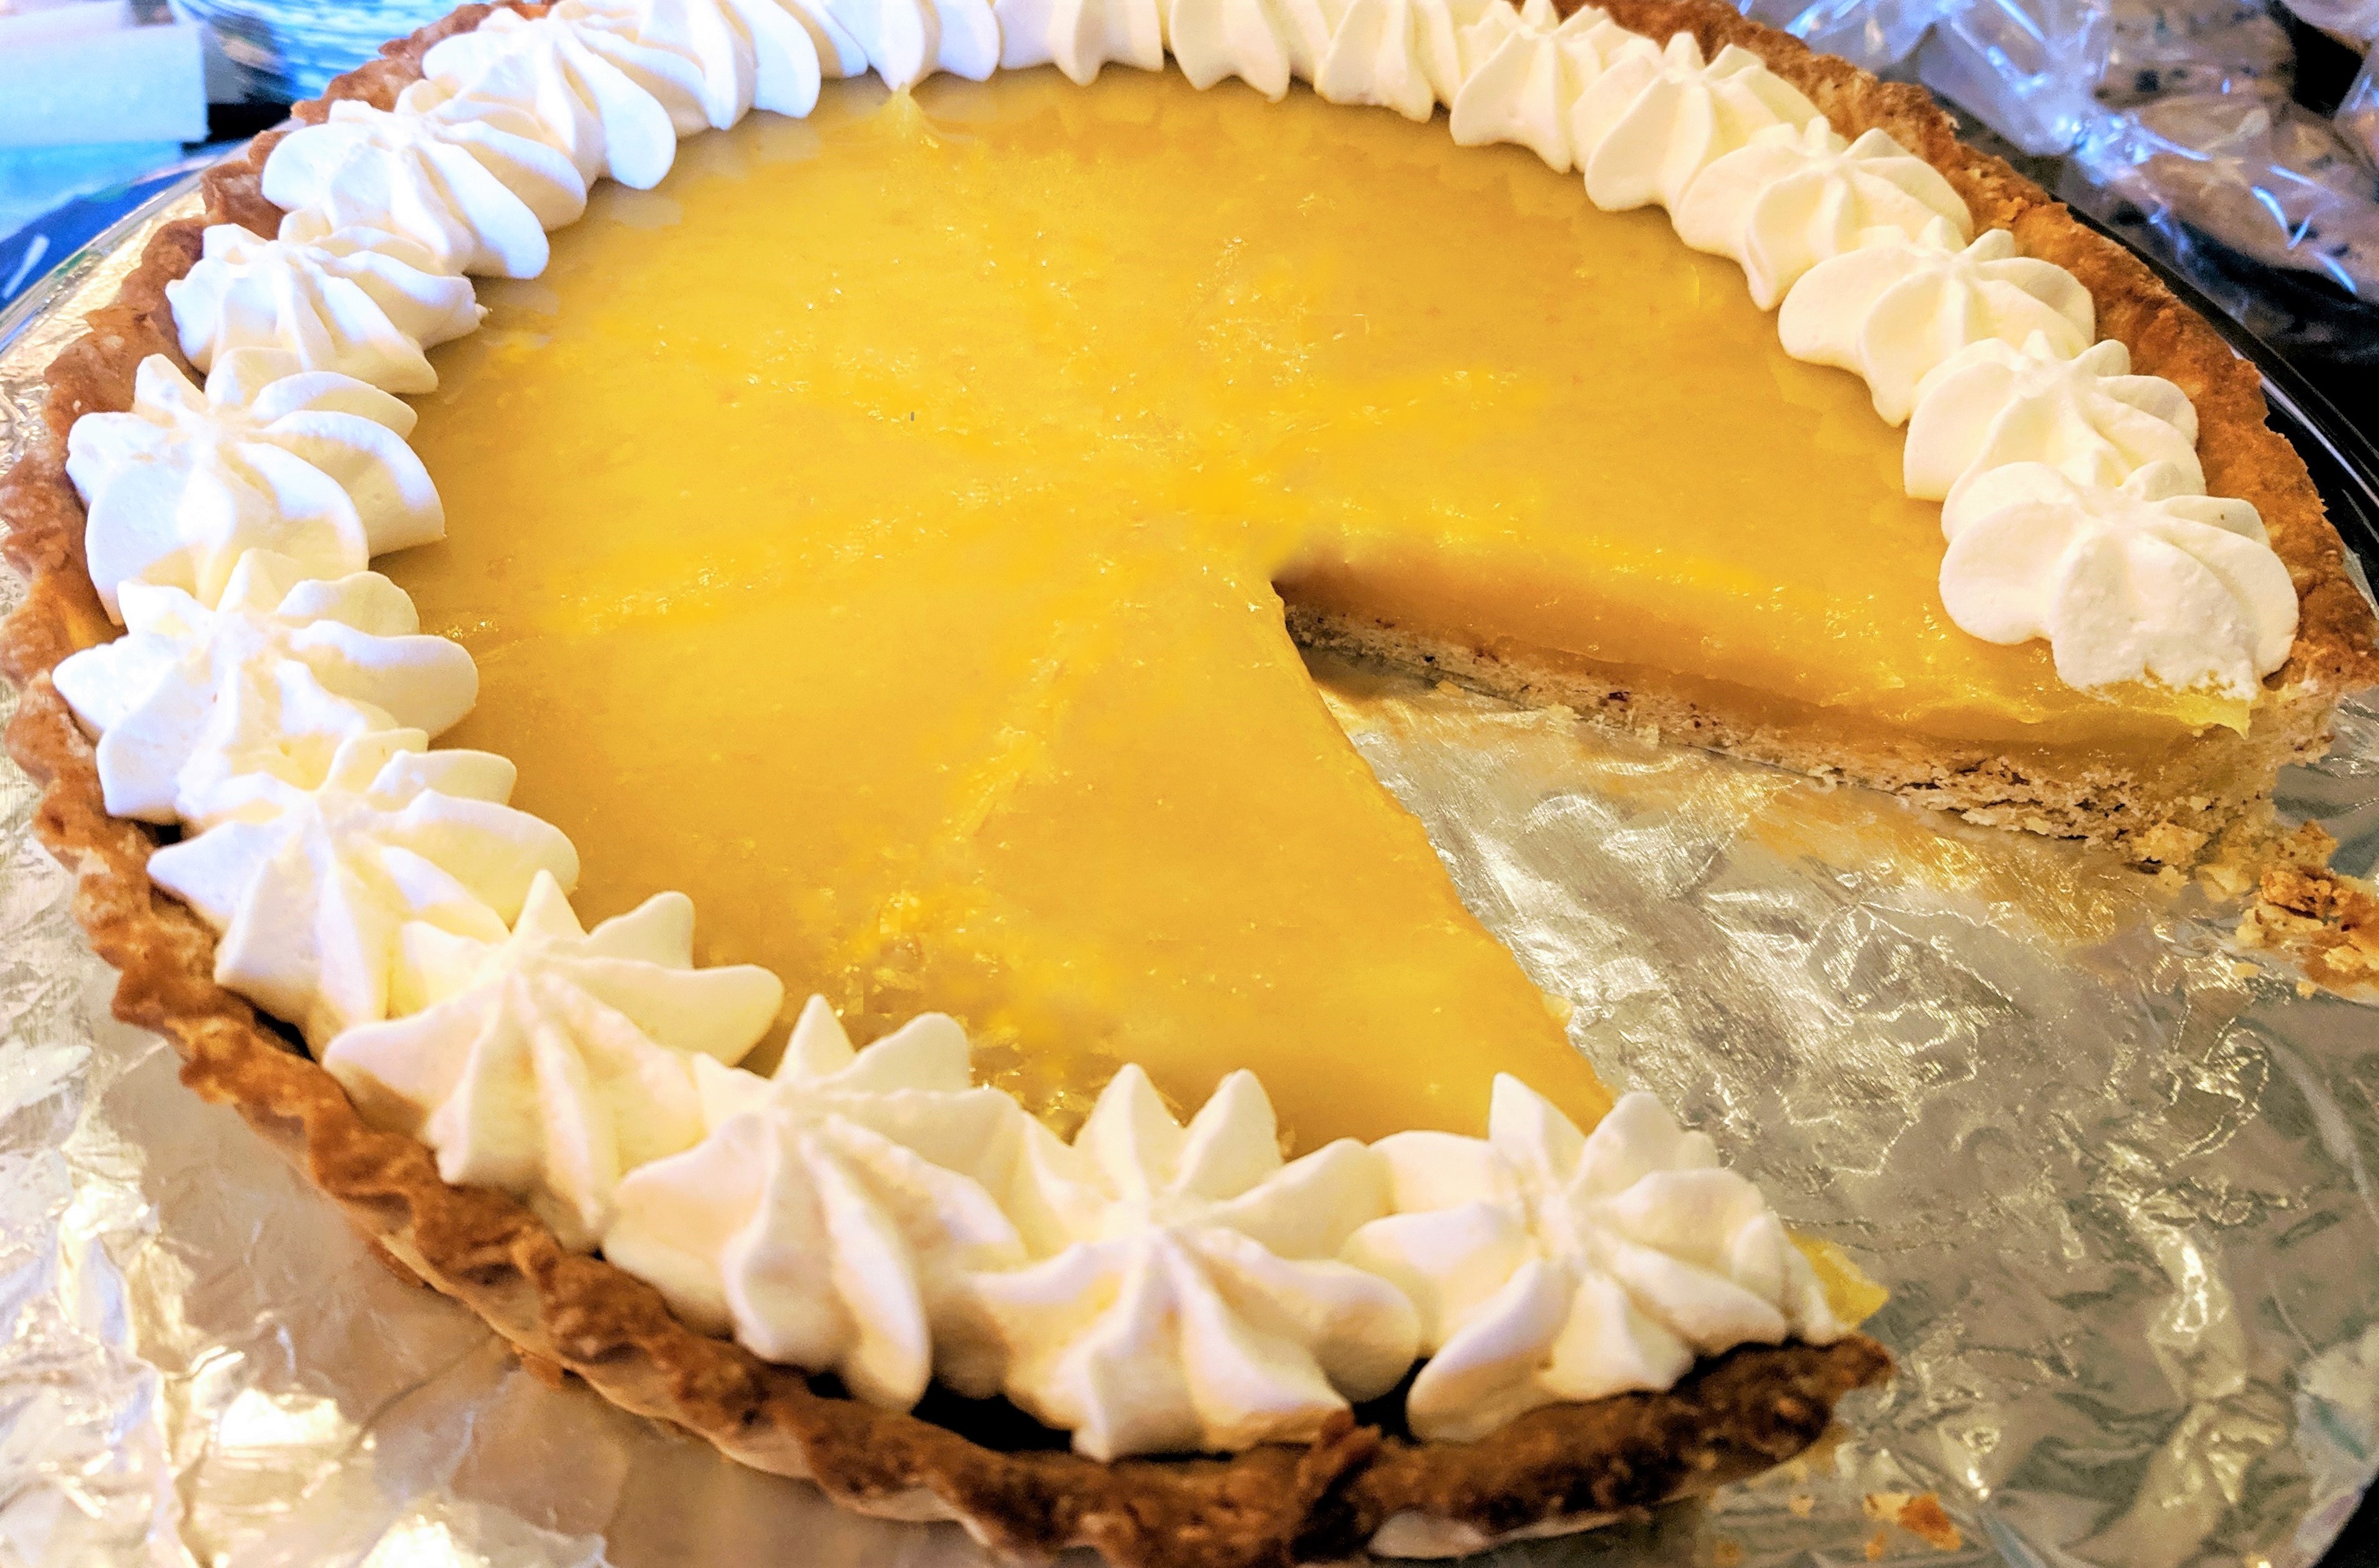 Lemon Curd Tart - Welcome to Dessert Lovers!